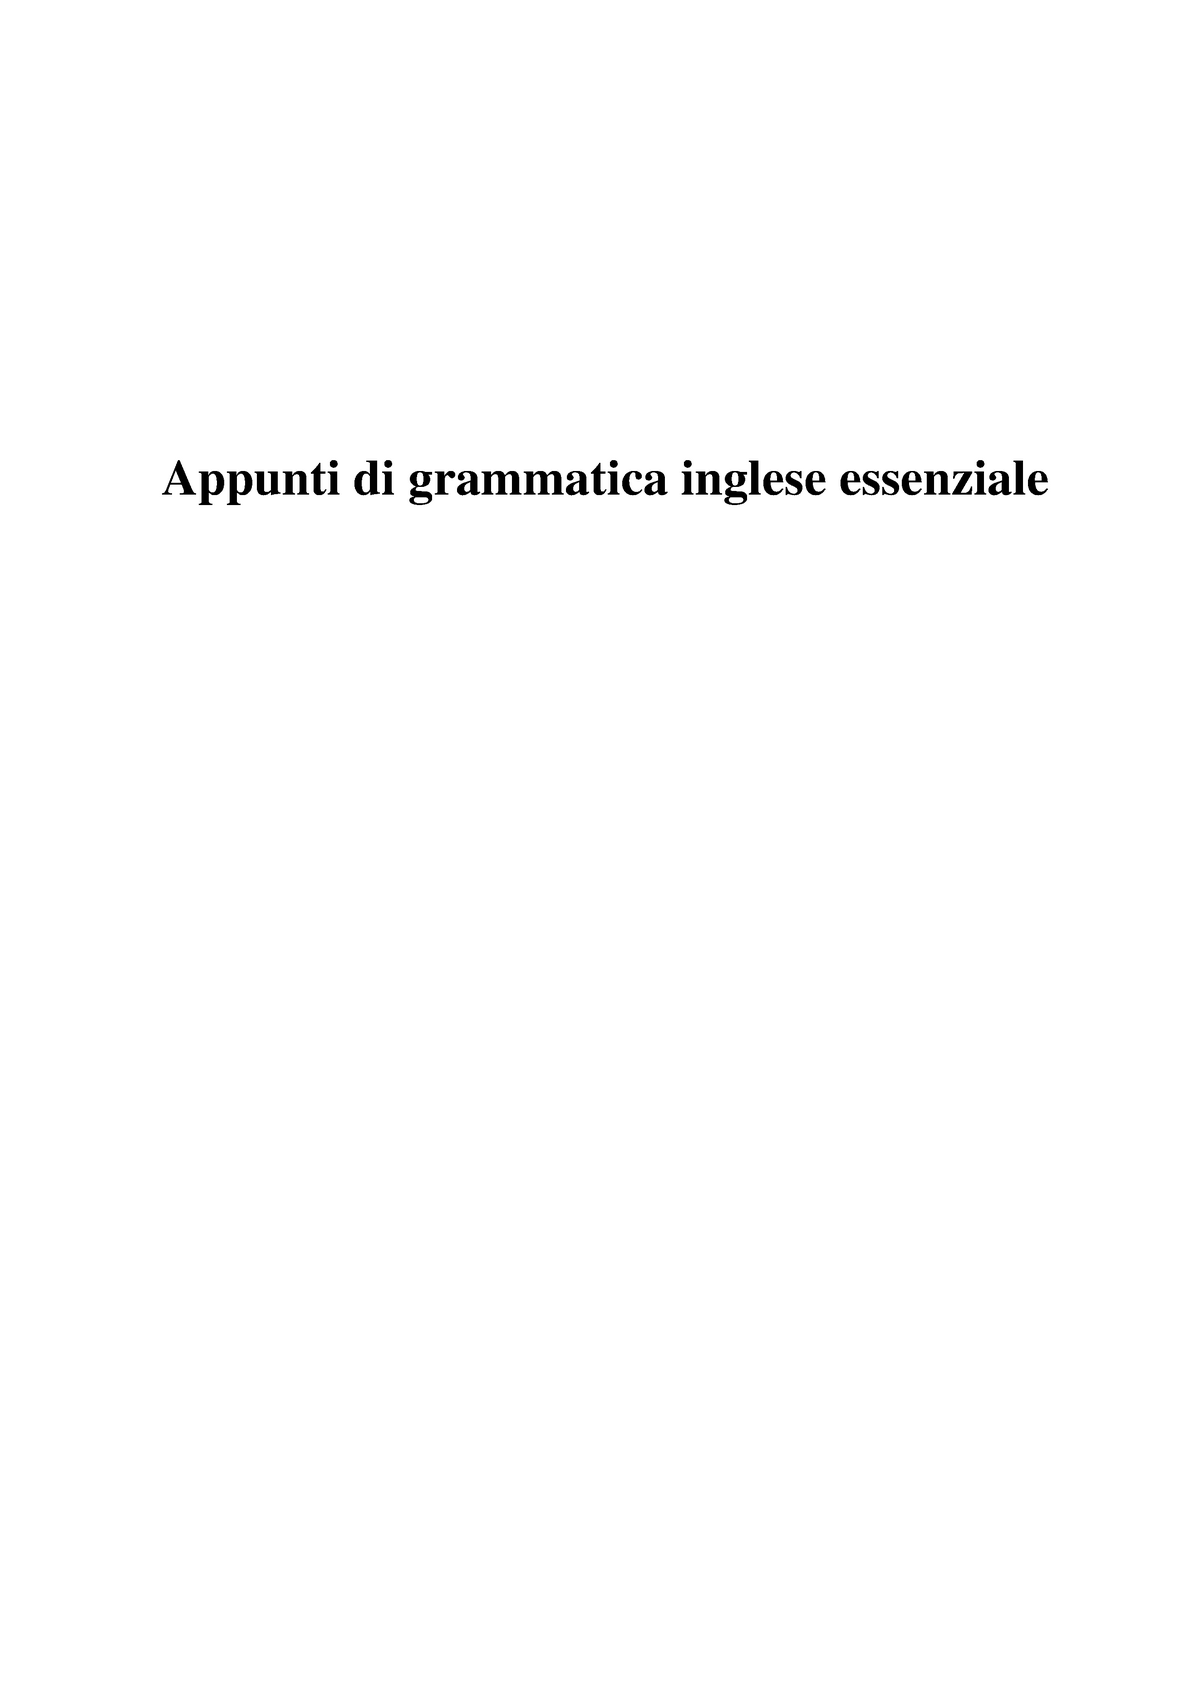 Grammatica Inglese Essenziale 04677 Unipa Studocu